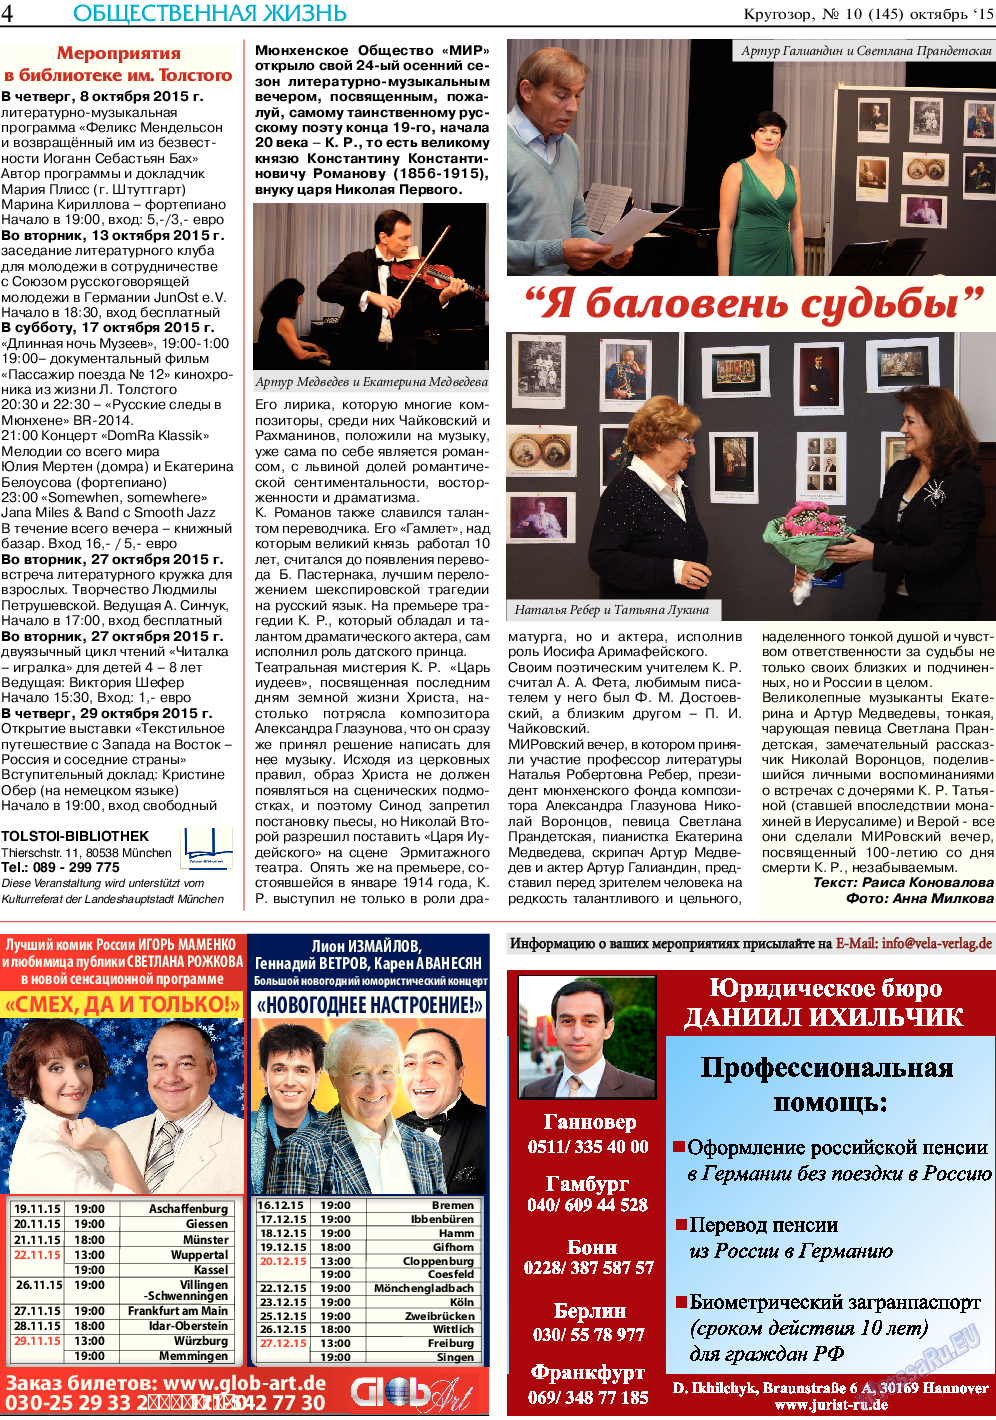 Кругозор, газета. 2015 №10 стр.4